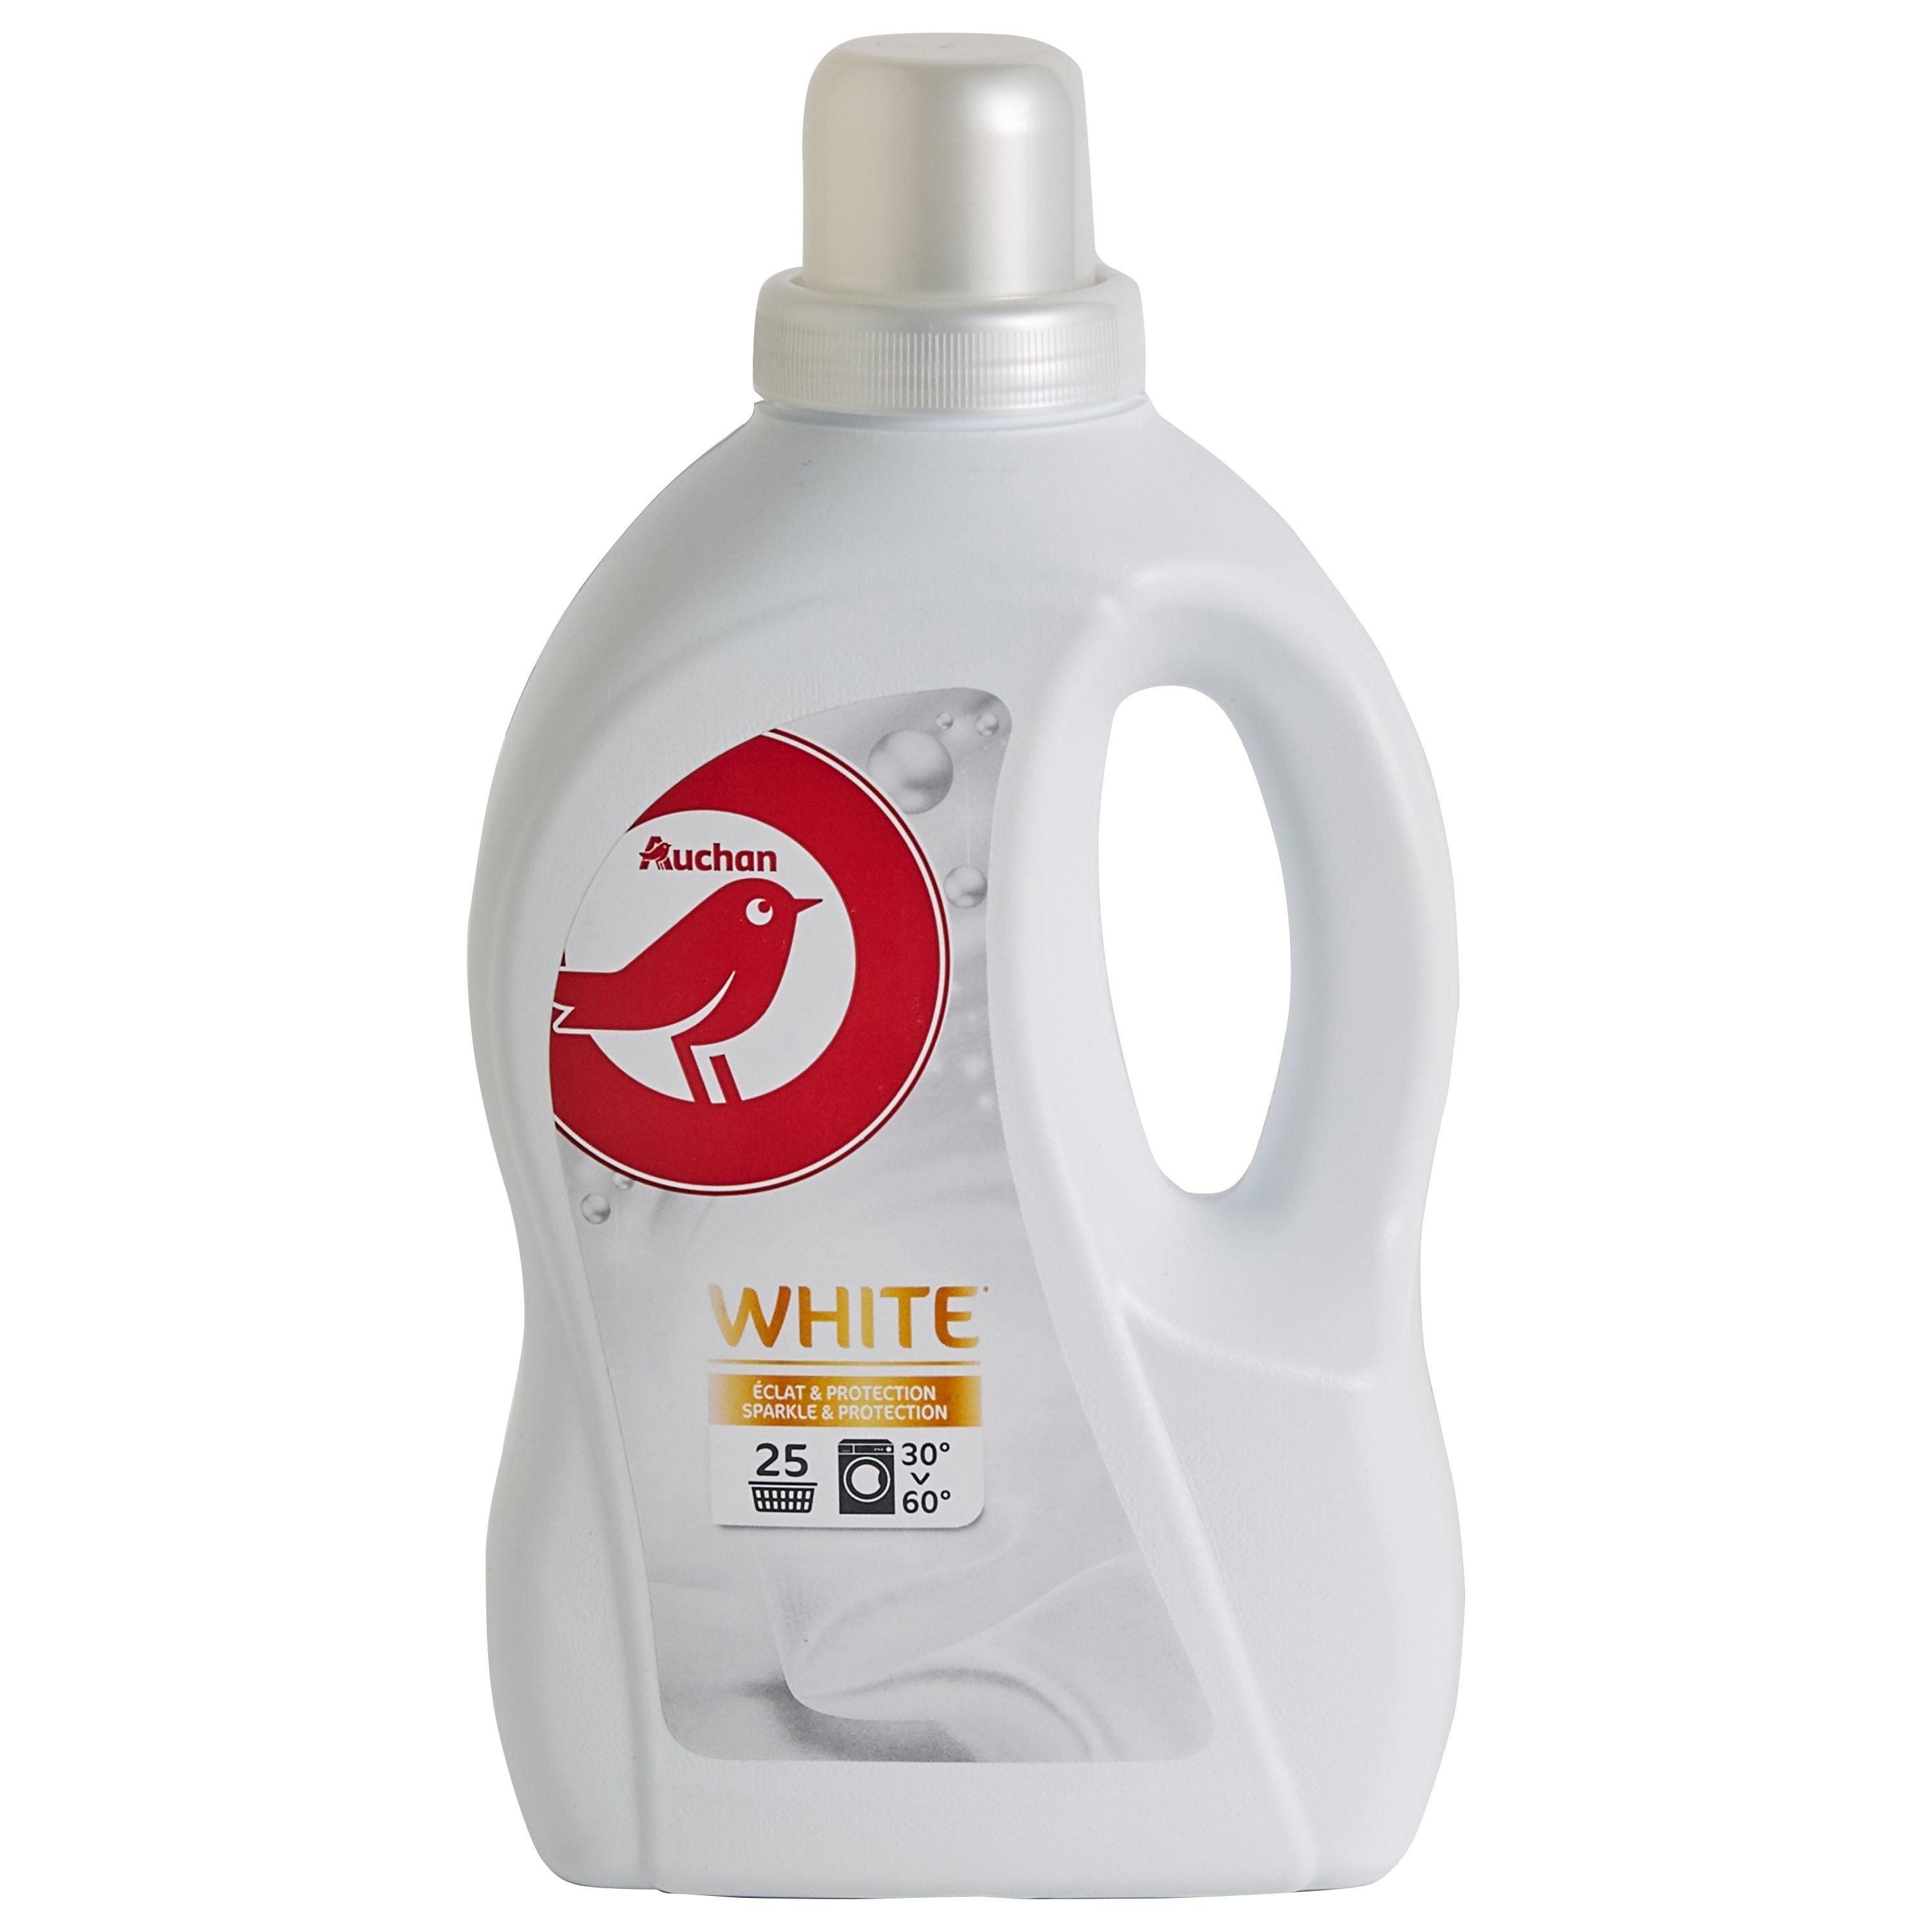 AUCHAN Lessive liquide white éclat et protection 25 lavages 1,5l pas cher 